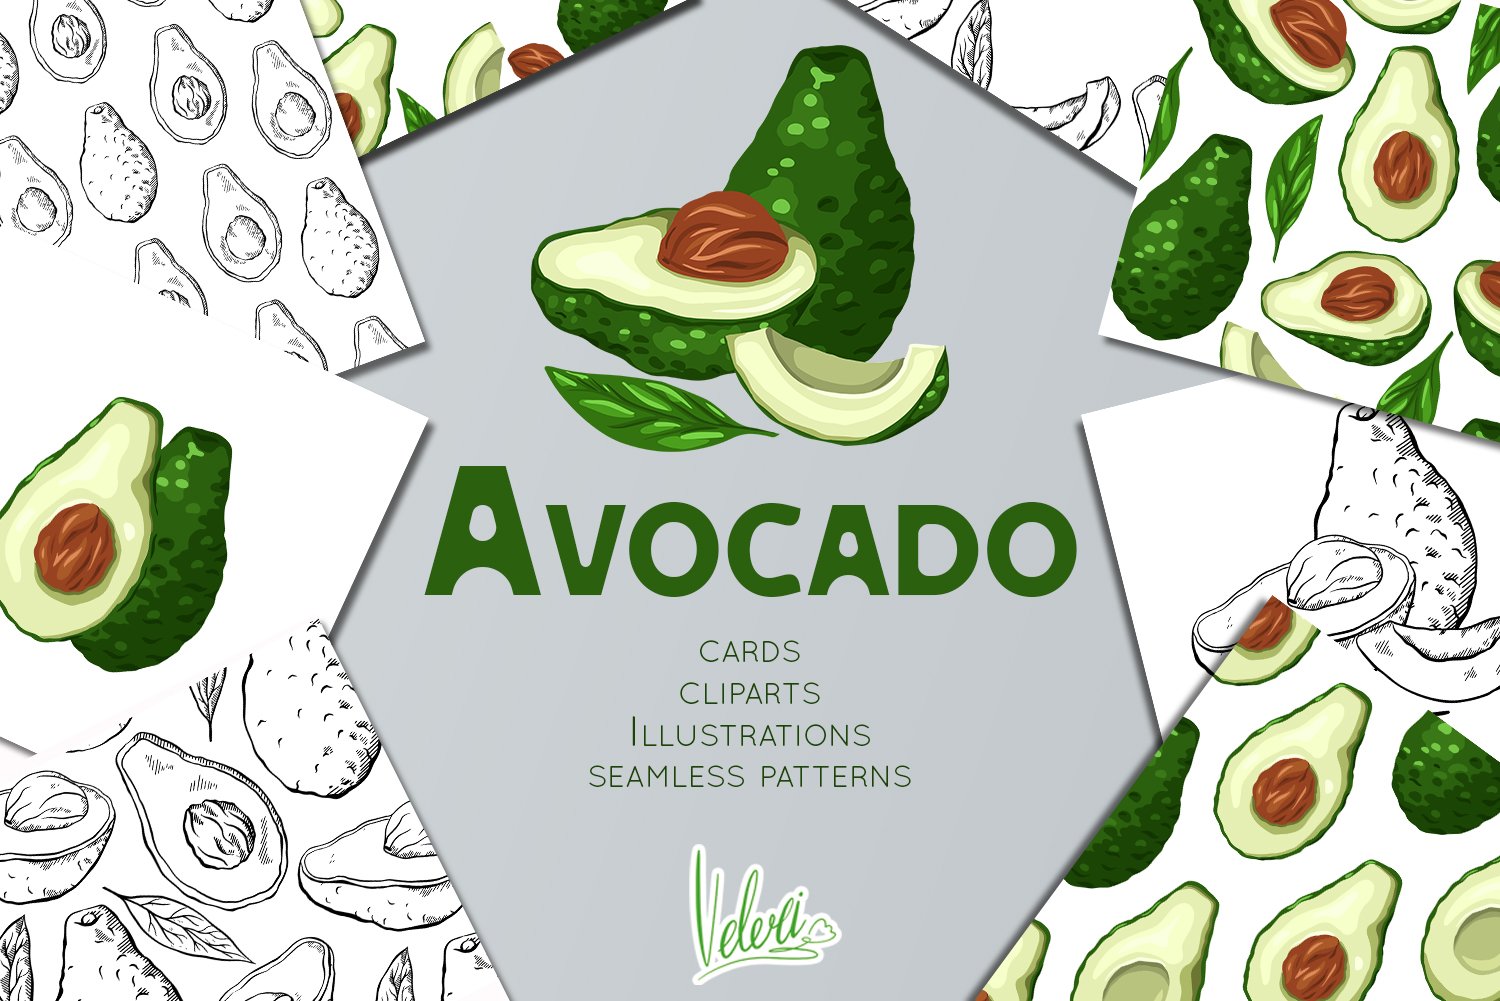 Avocado cover image.